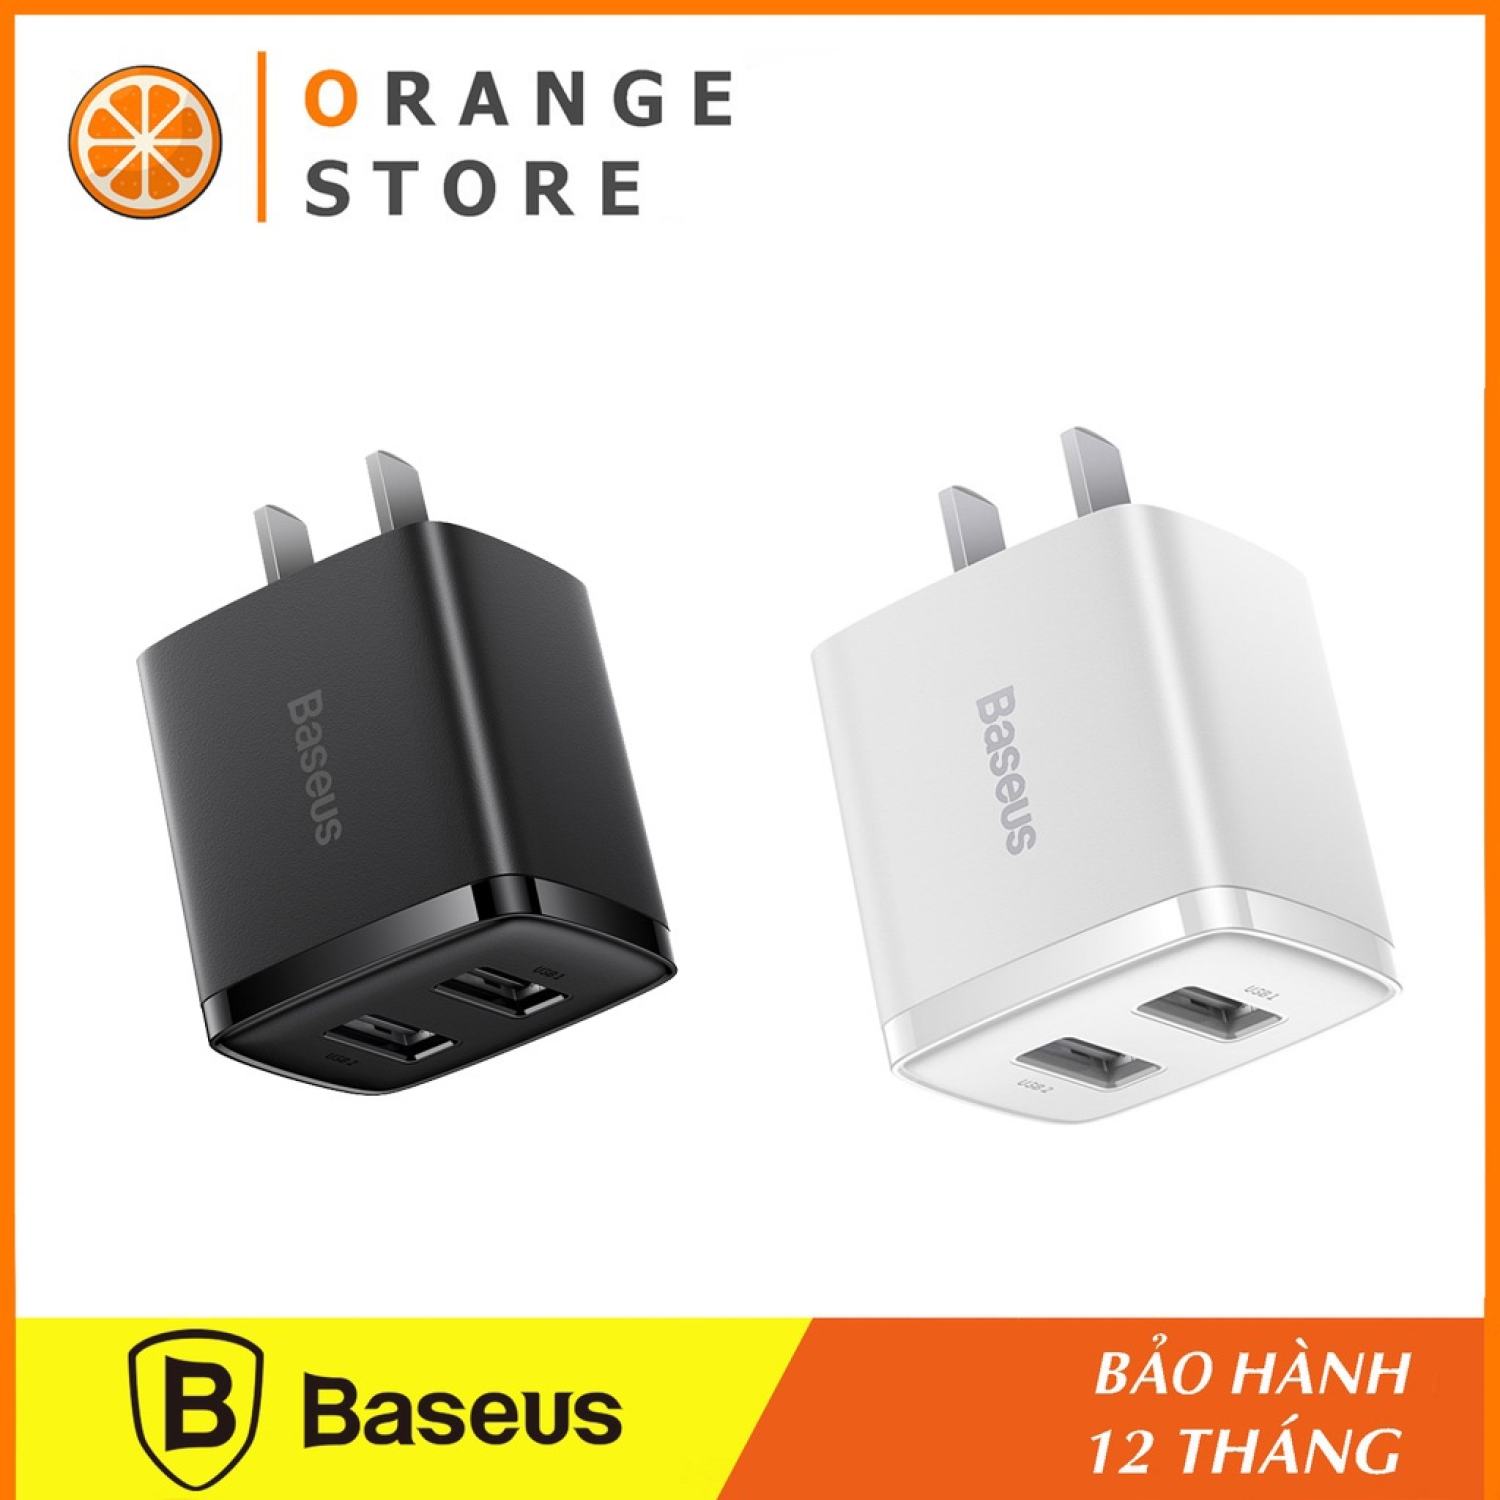 Củ sạc nhanh Baseus Compact Charger 2 cổng USB 10.5W hỗ trợ sạc smartphone